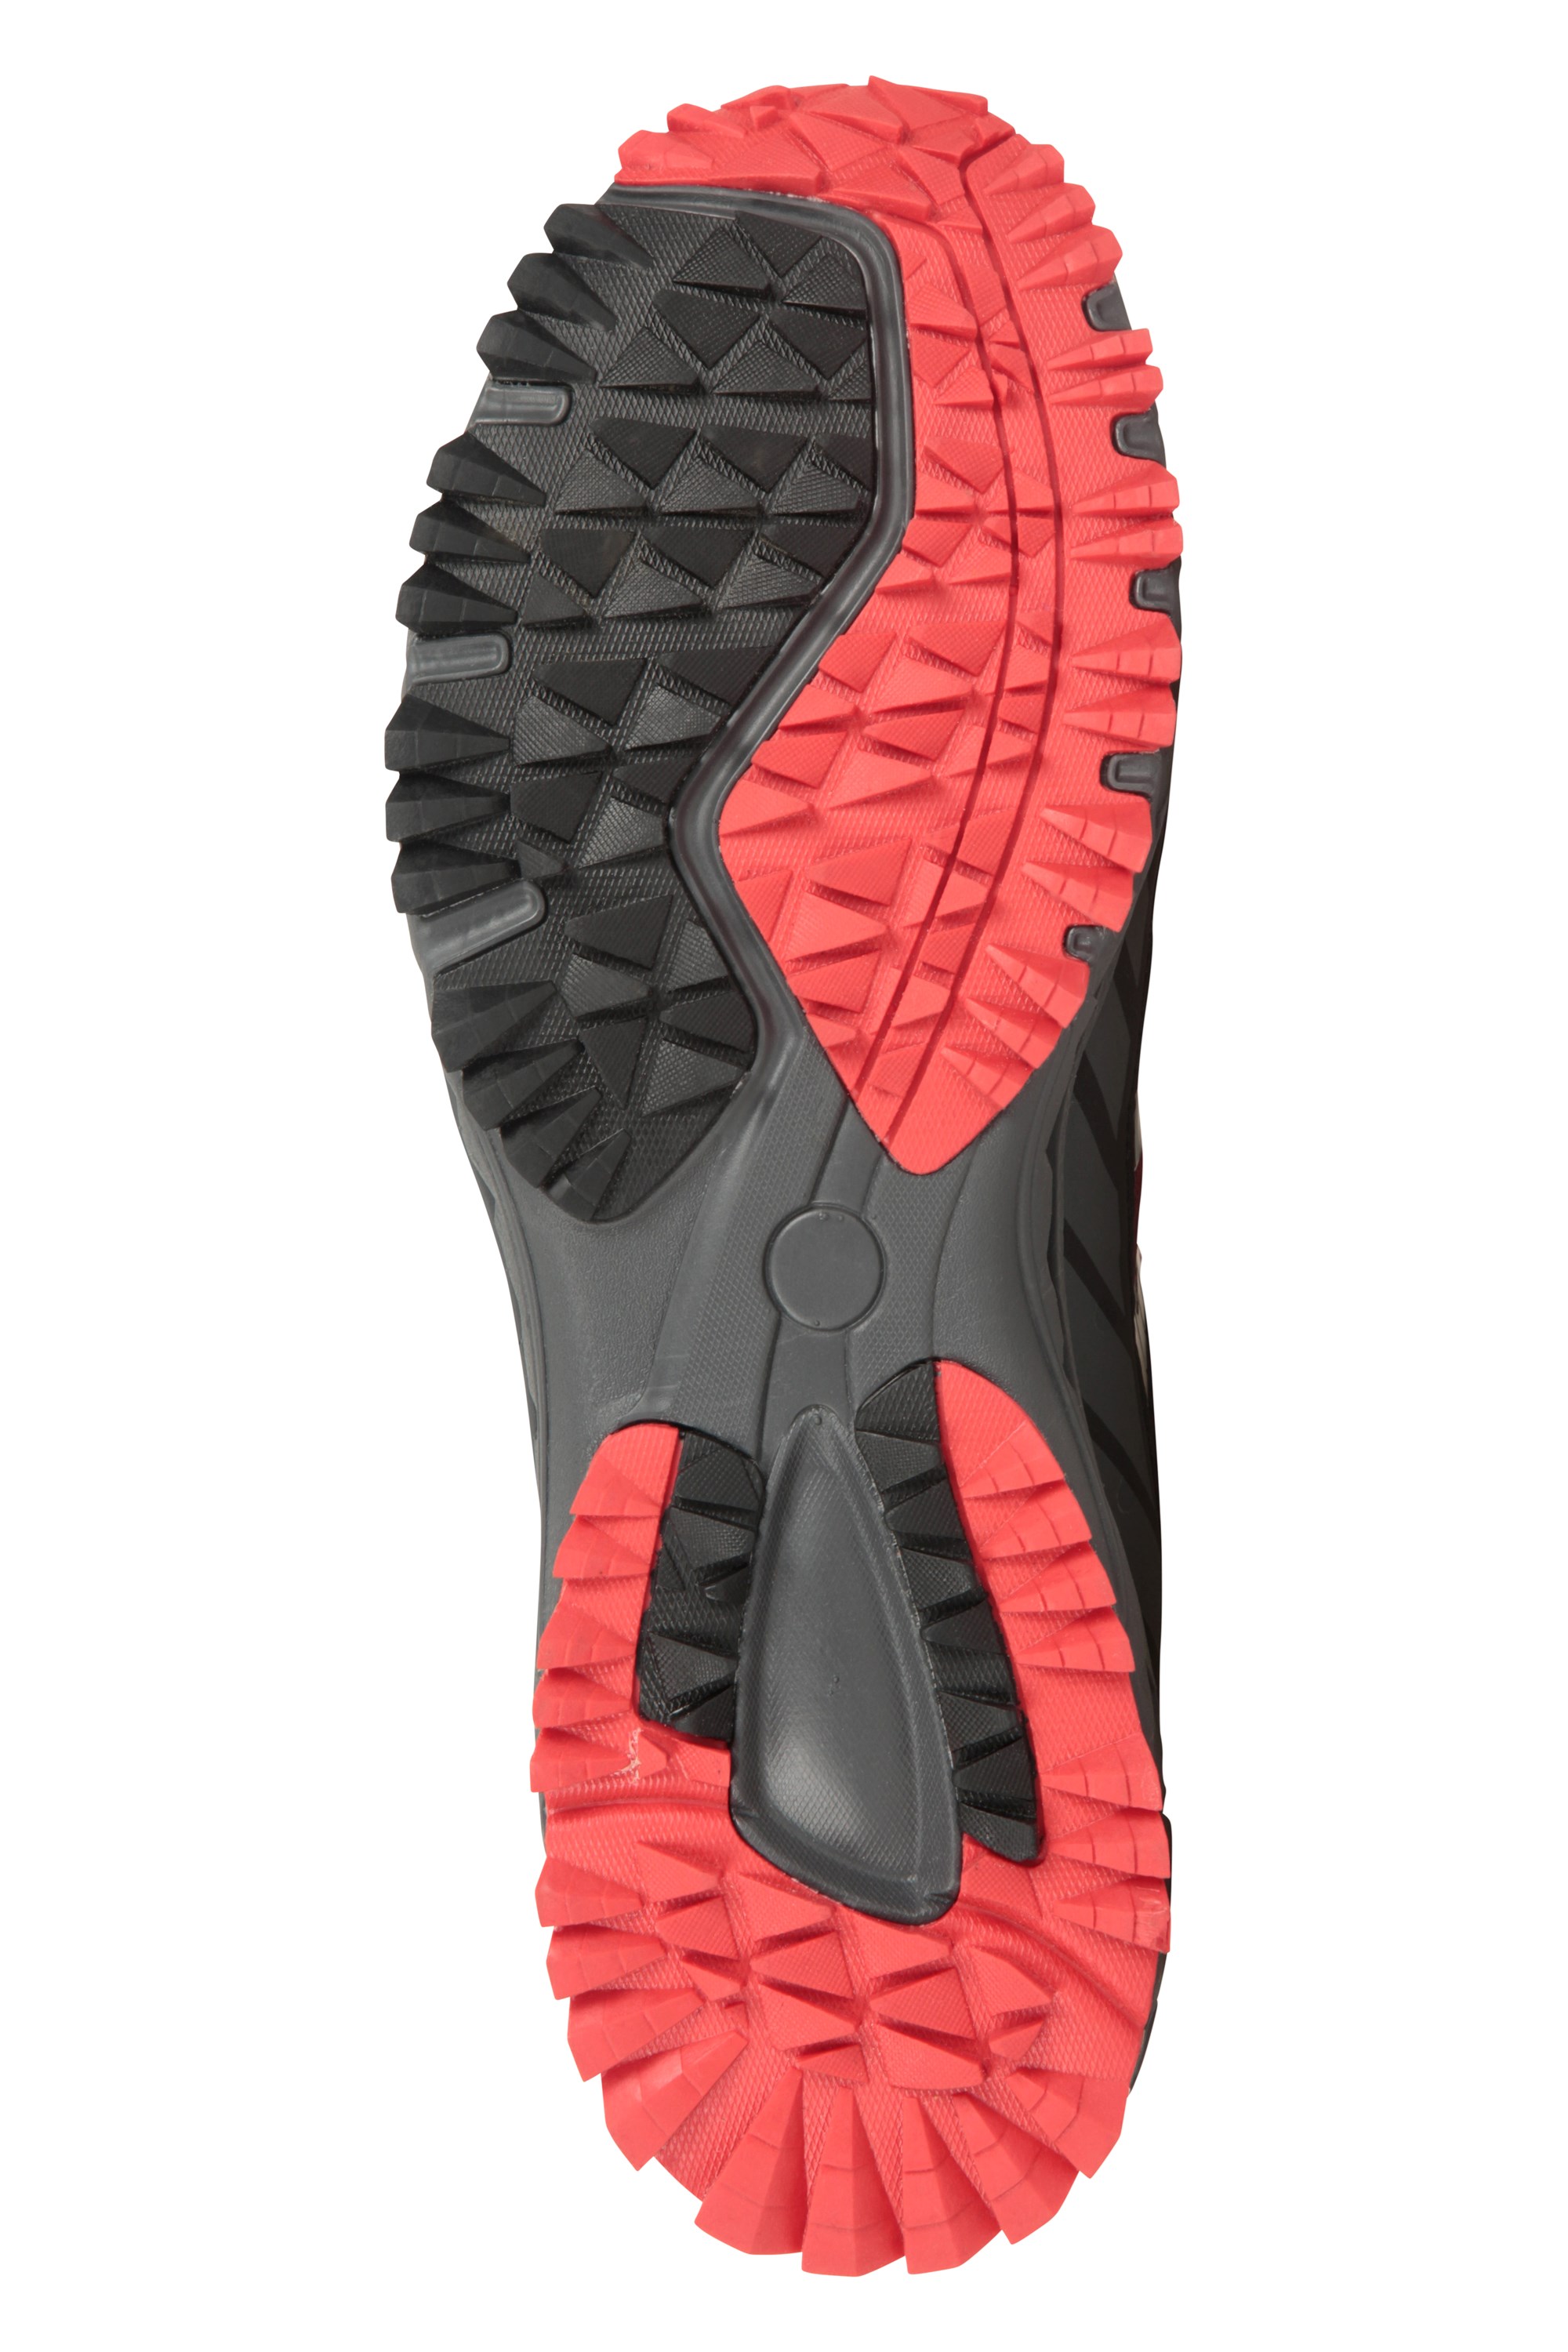 Enhance Mens Waterproof Trail Runner Sneakers